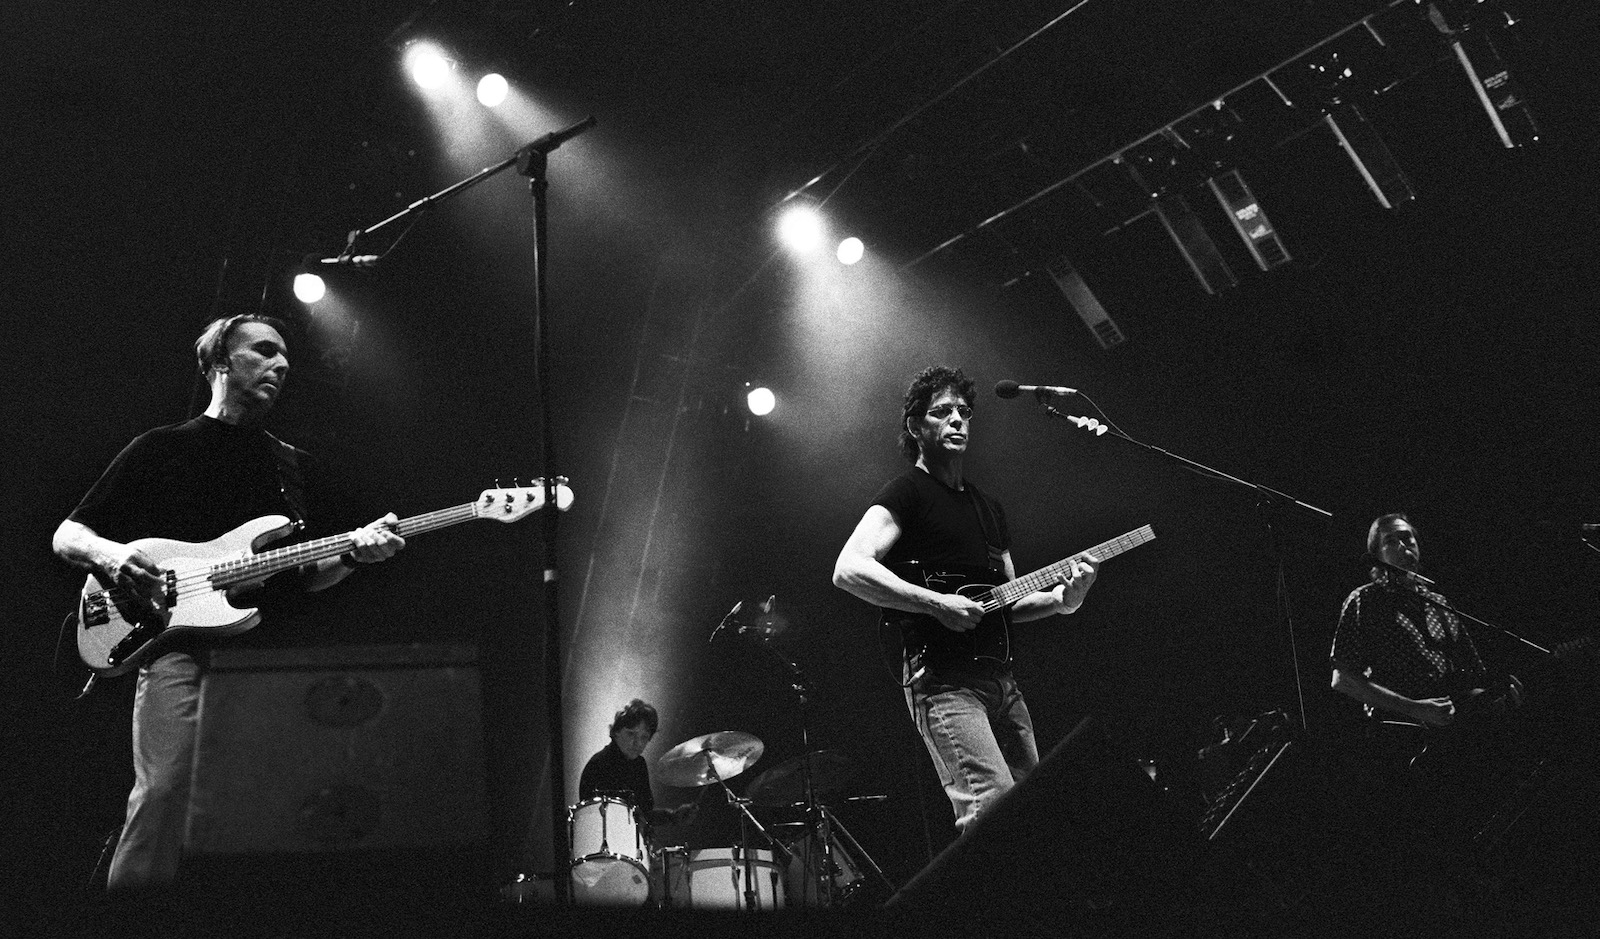 Velvet Underground reunion concert, 1993